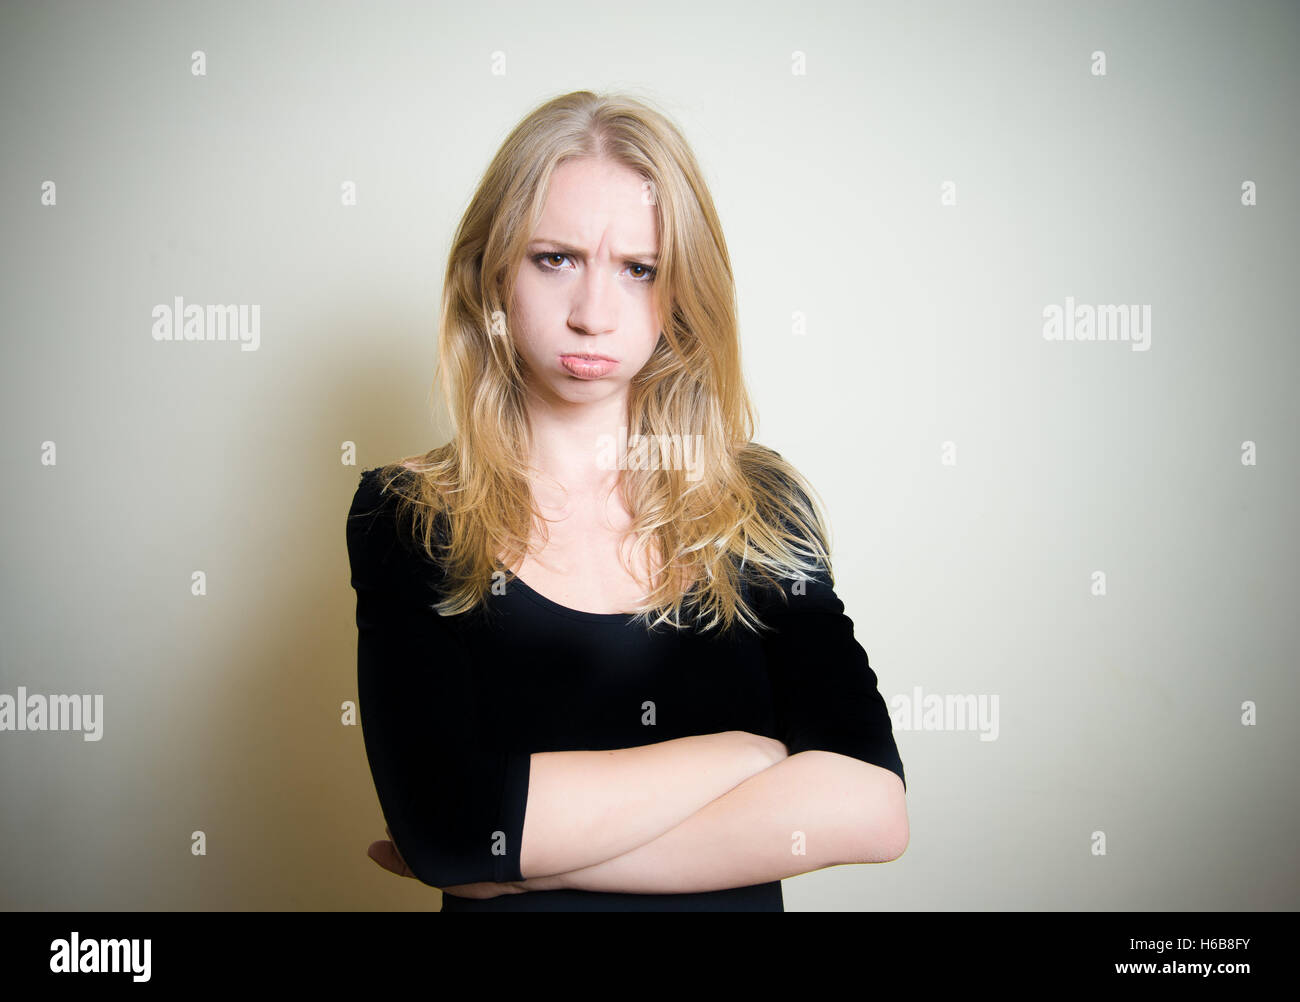 Jeune blonde attractive woman looking at camera, expression visage en colère, grincheux, sulky, offensé, maussade, claire mur dans backgrou Banque D'Images